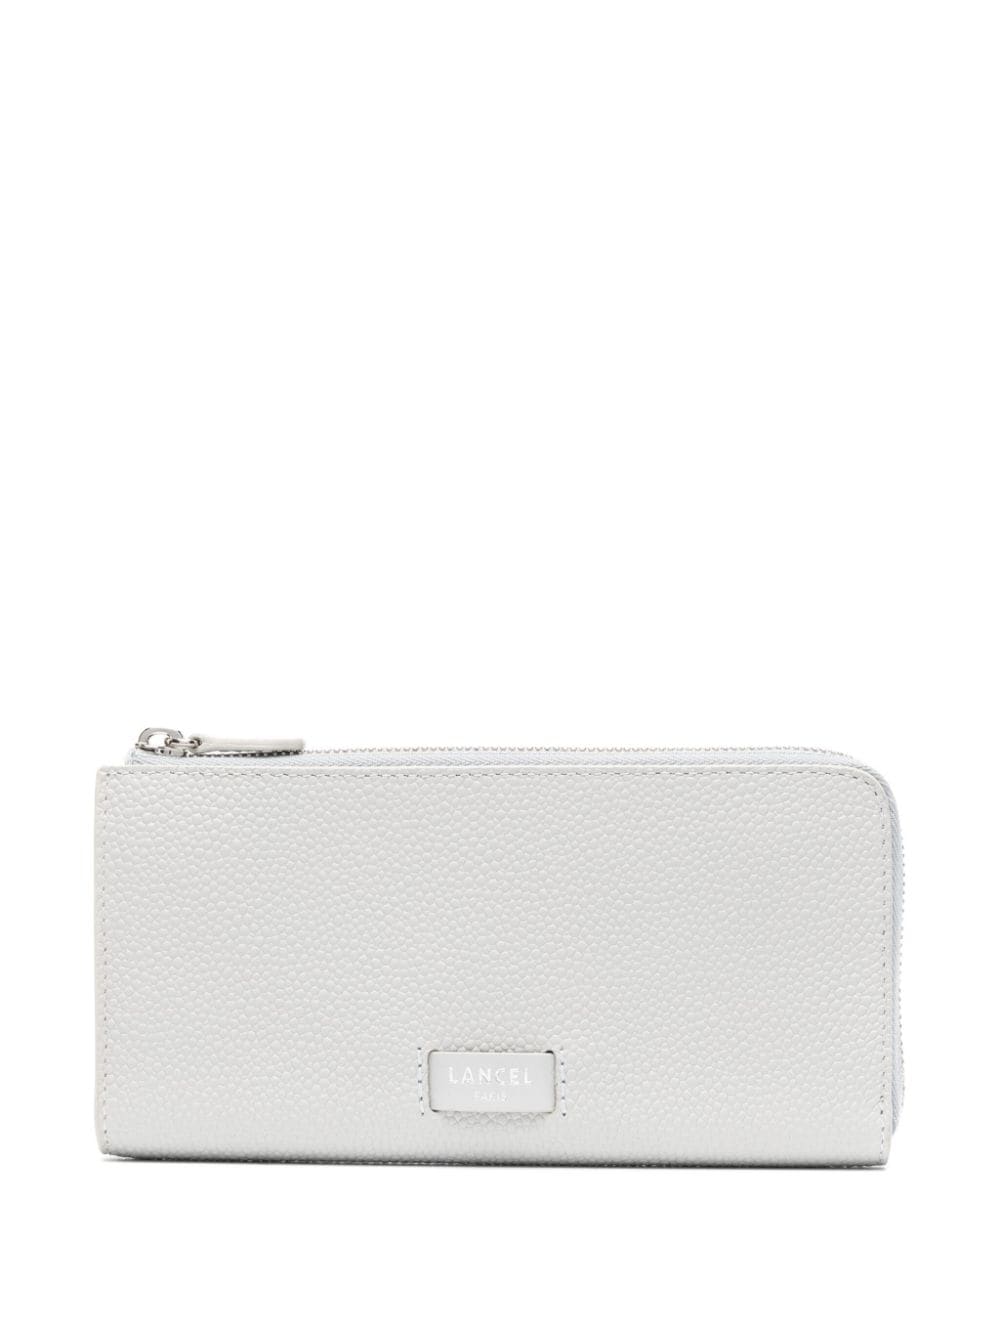 Lancel Ninon leather zipped wallet - White von Lancel